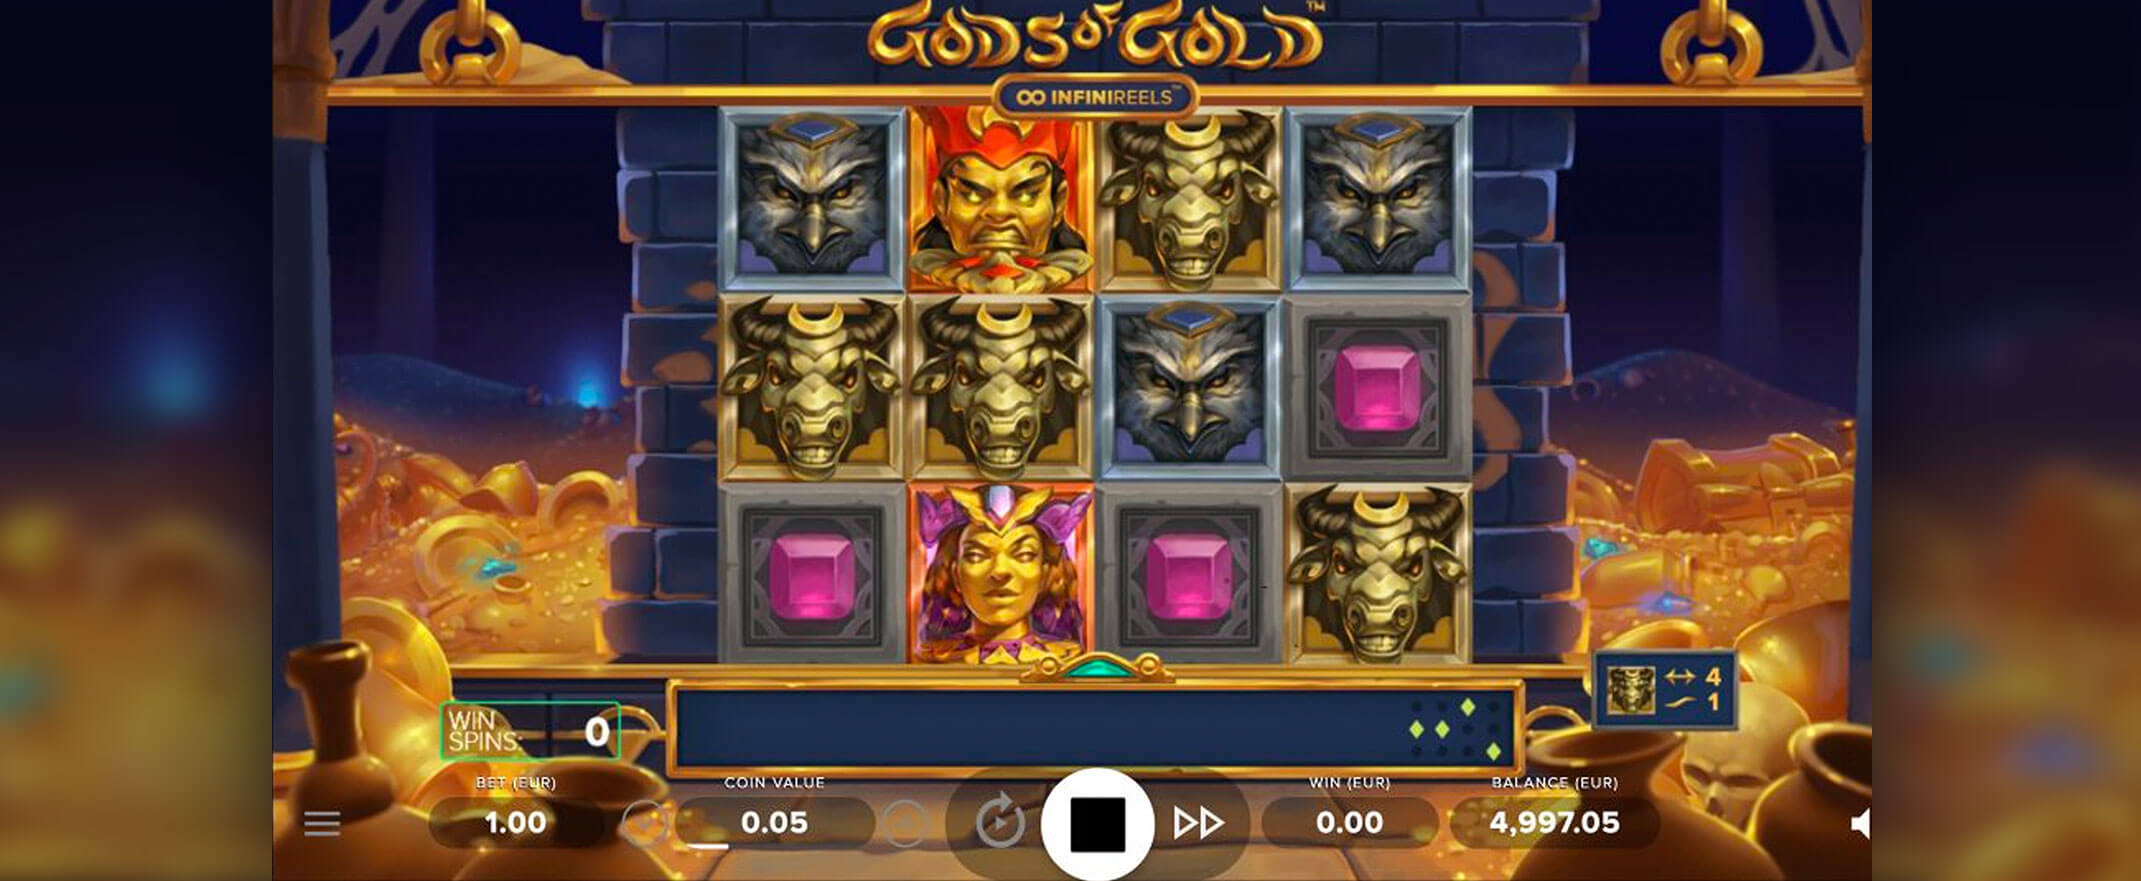 Gods of Gold INFINIREELS Spielautomaten Bewertung